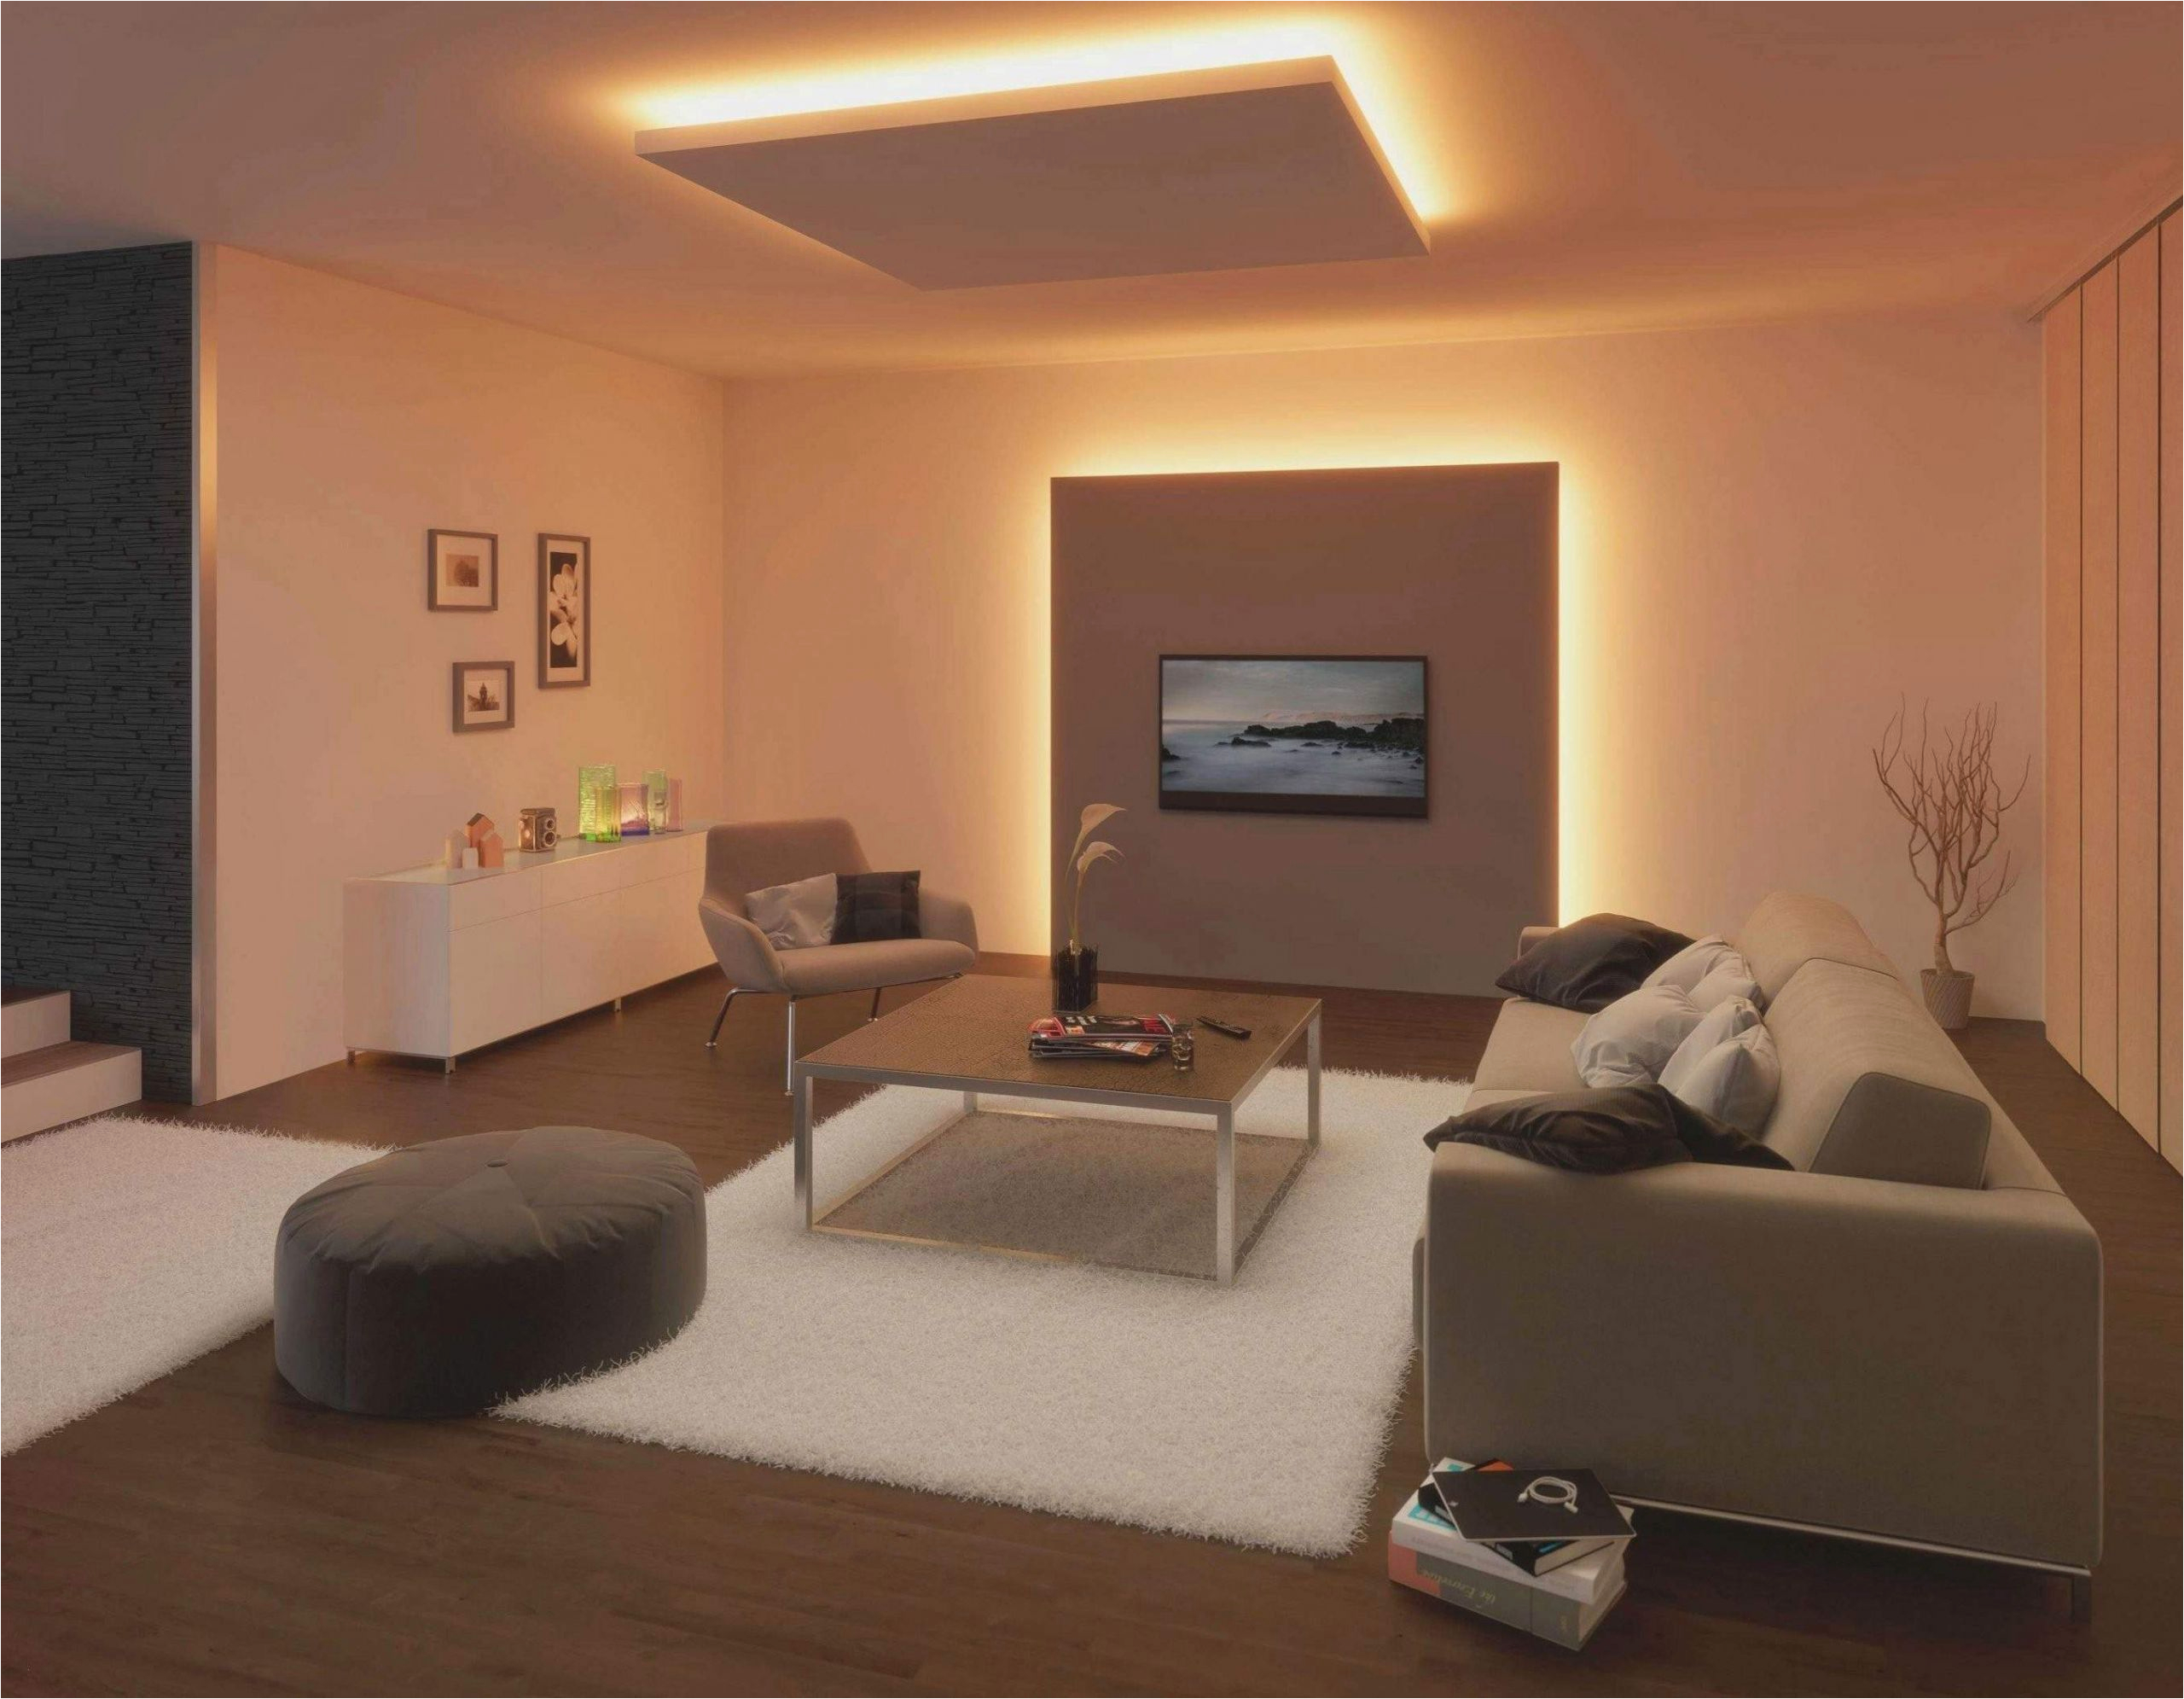 lampen wohnzimmer design luxus ikea lampen wohnzimmer design besten ideen ses jahr of lampen wohnzimmer design scaled